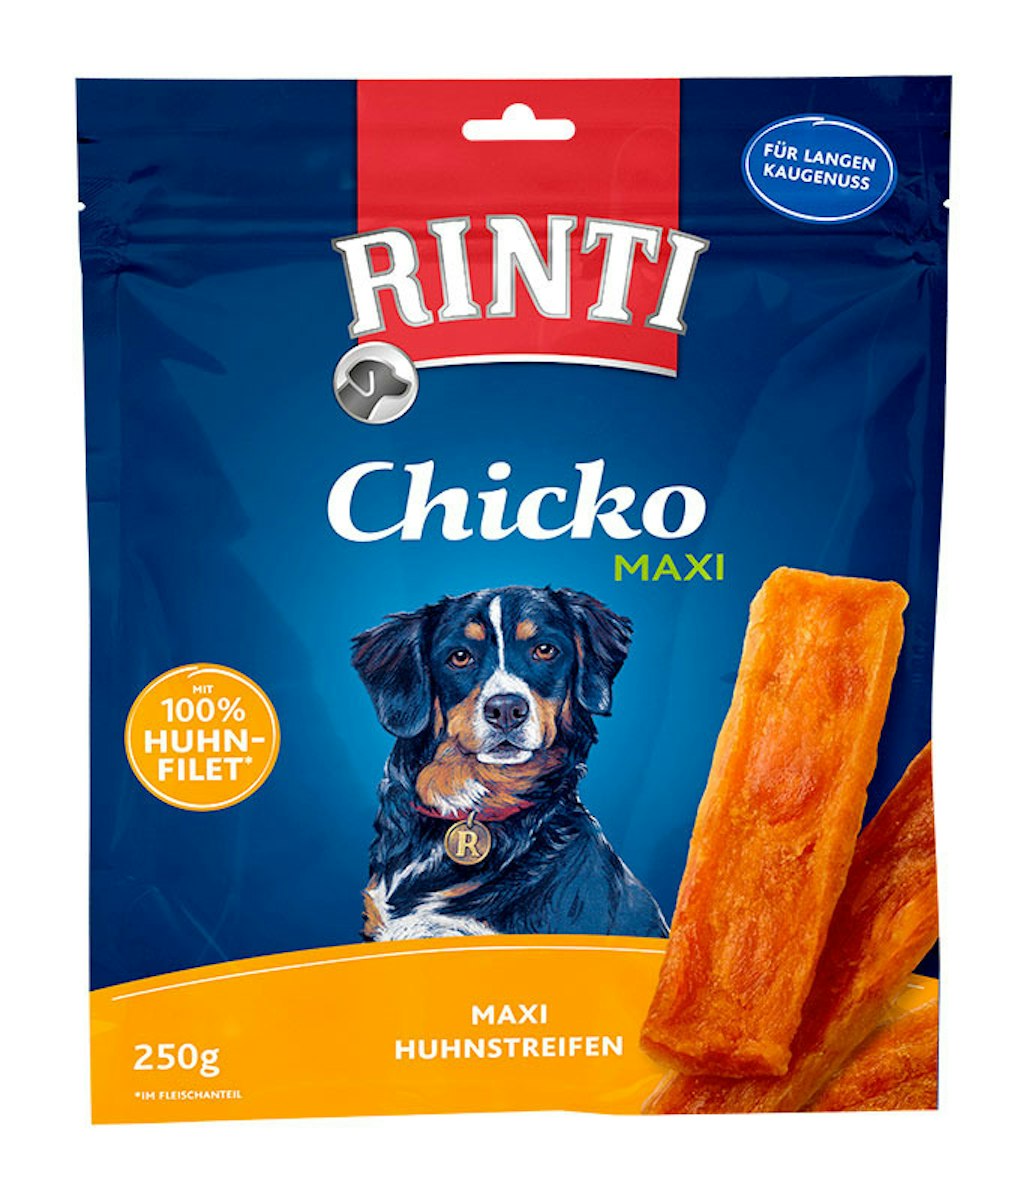 RINTI Chicko Maxi 250 Gramm Hundesnacks von Rinti